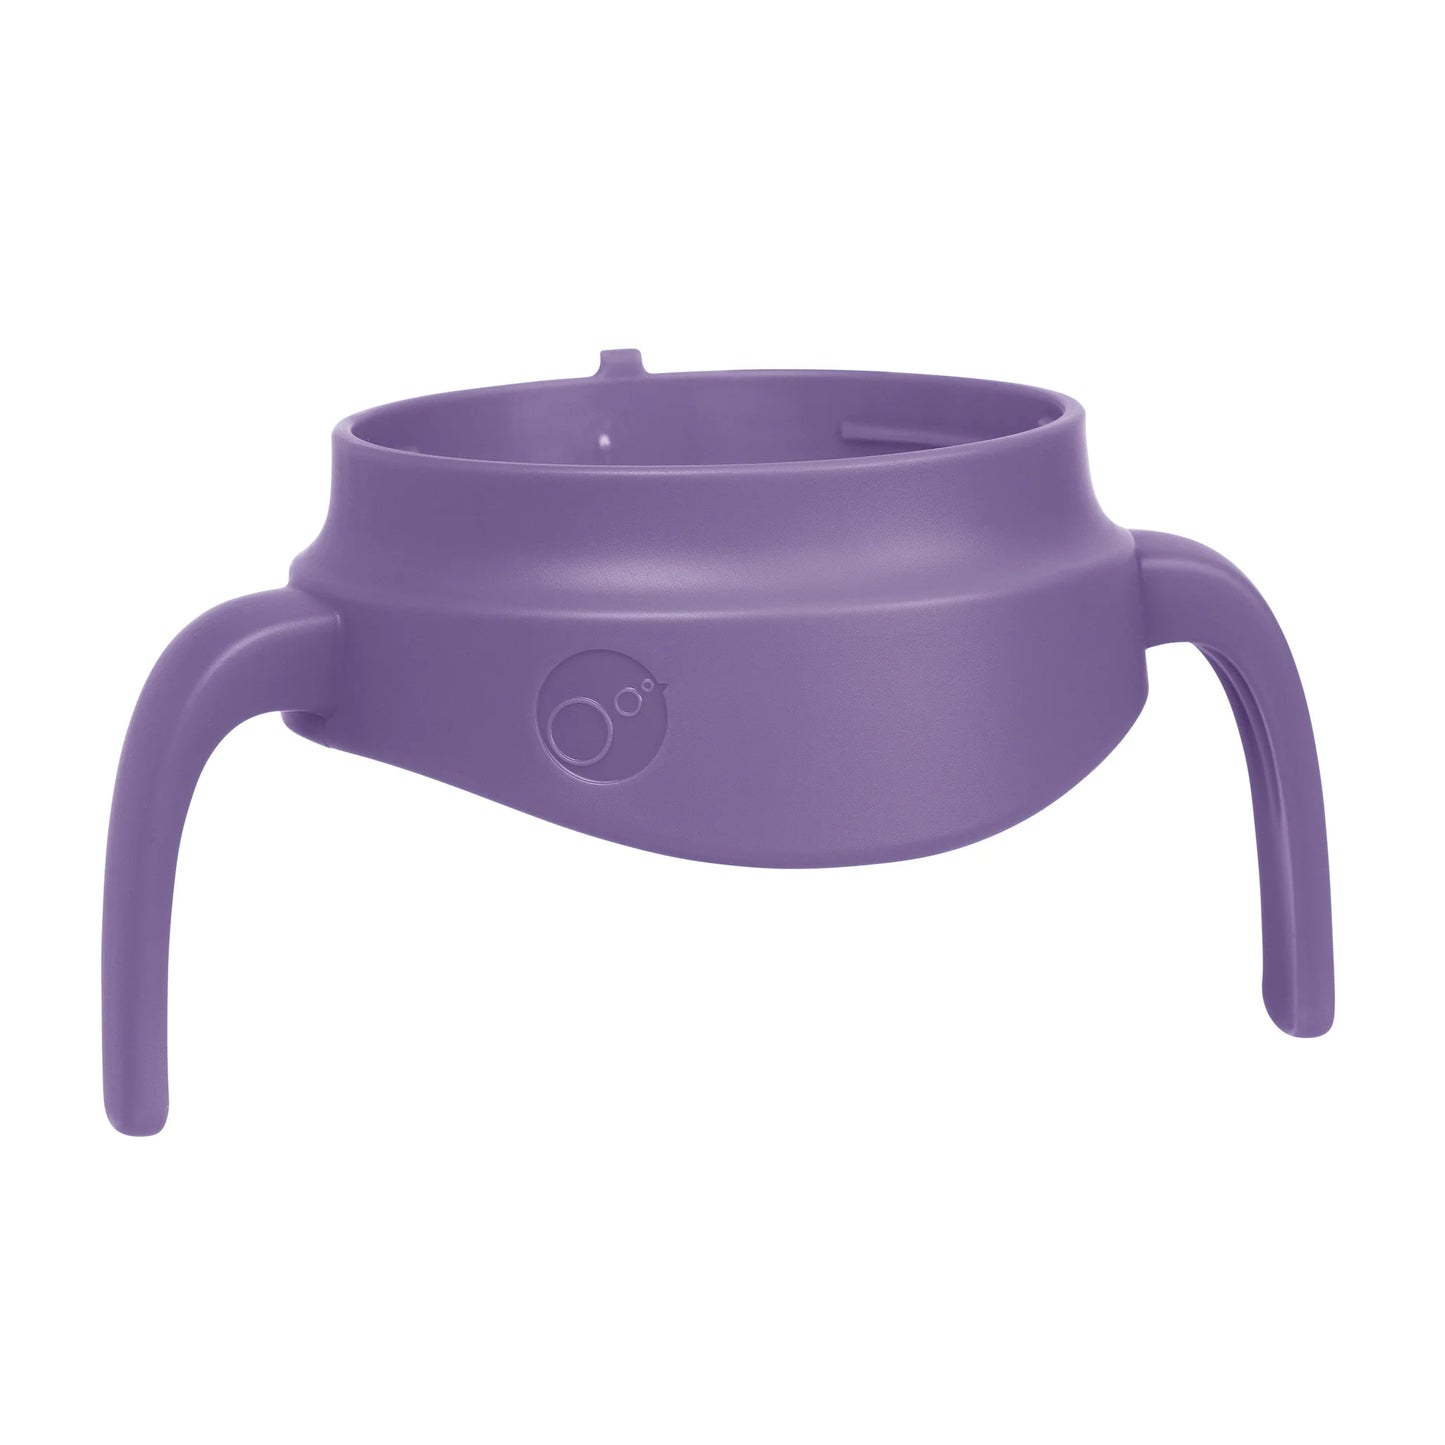 B.box Insulated Food Jar - Lilac Pop